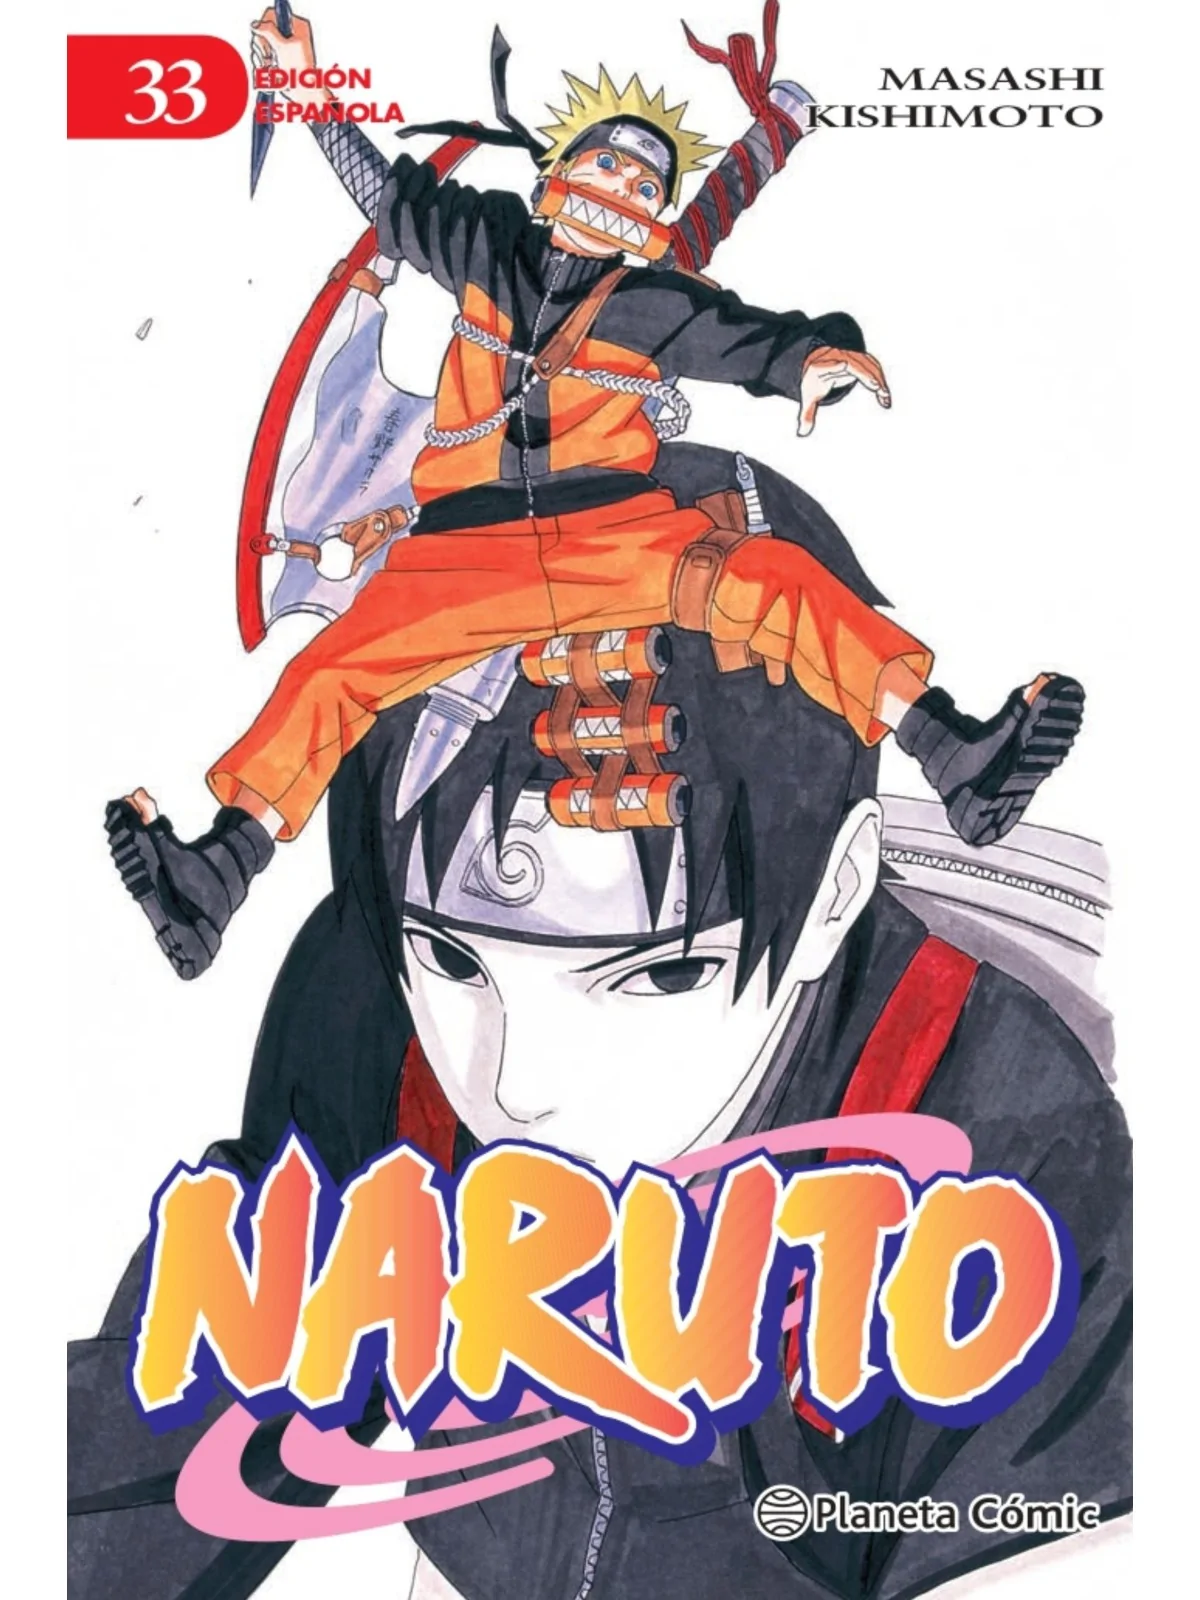 Comprar Naruto 33 barato al mejor precio 7,12 € de Planeta Comic